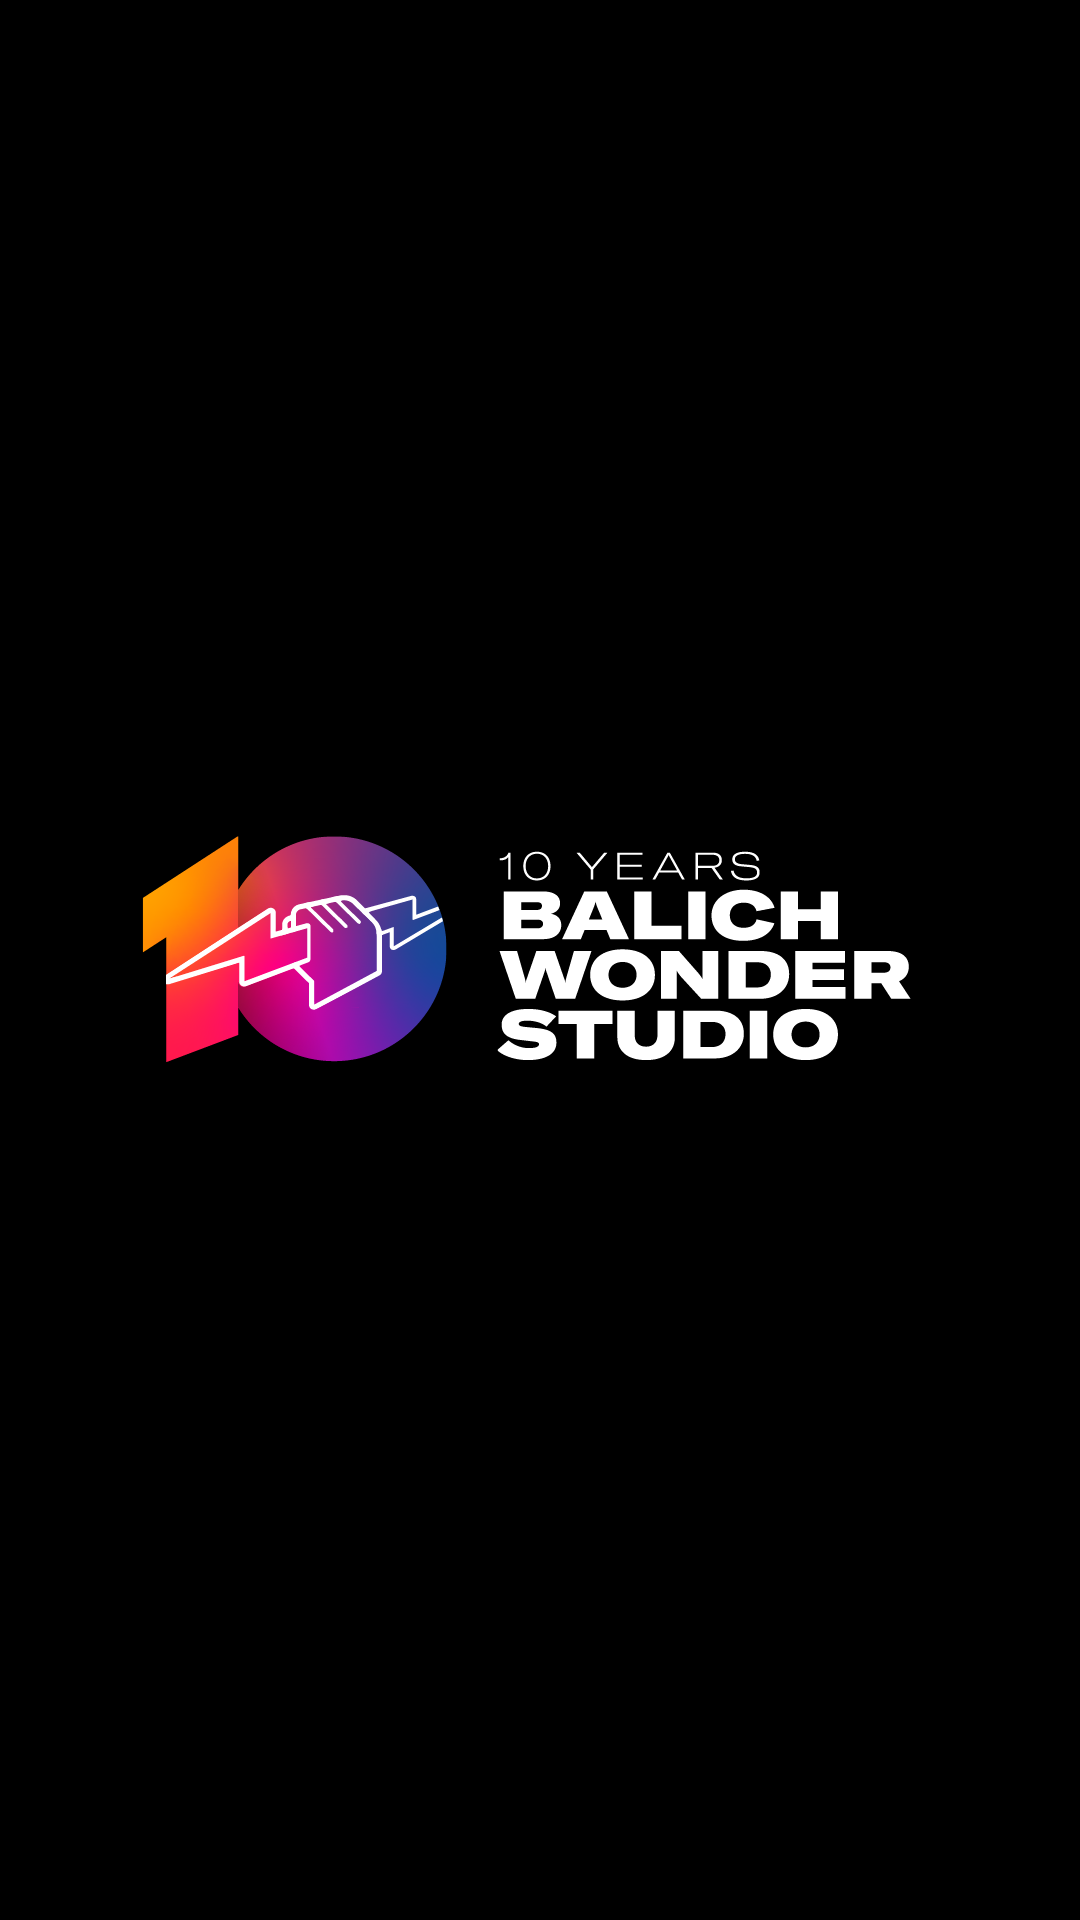 Balich Wonder Studio